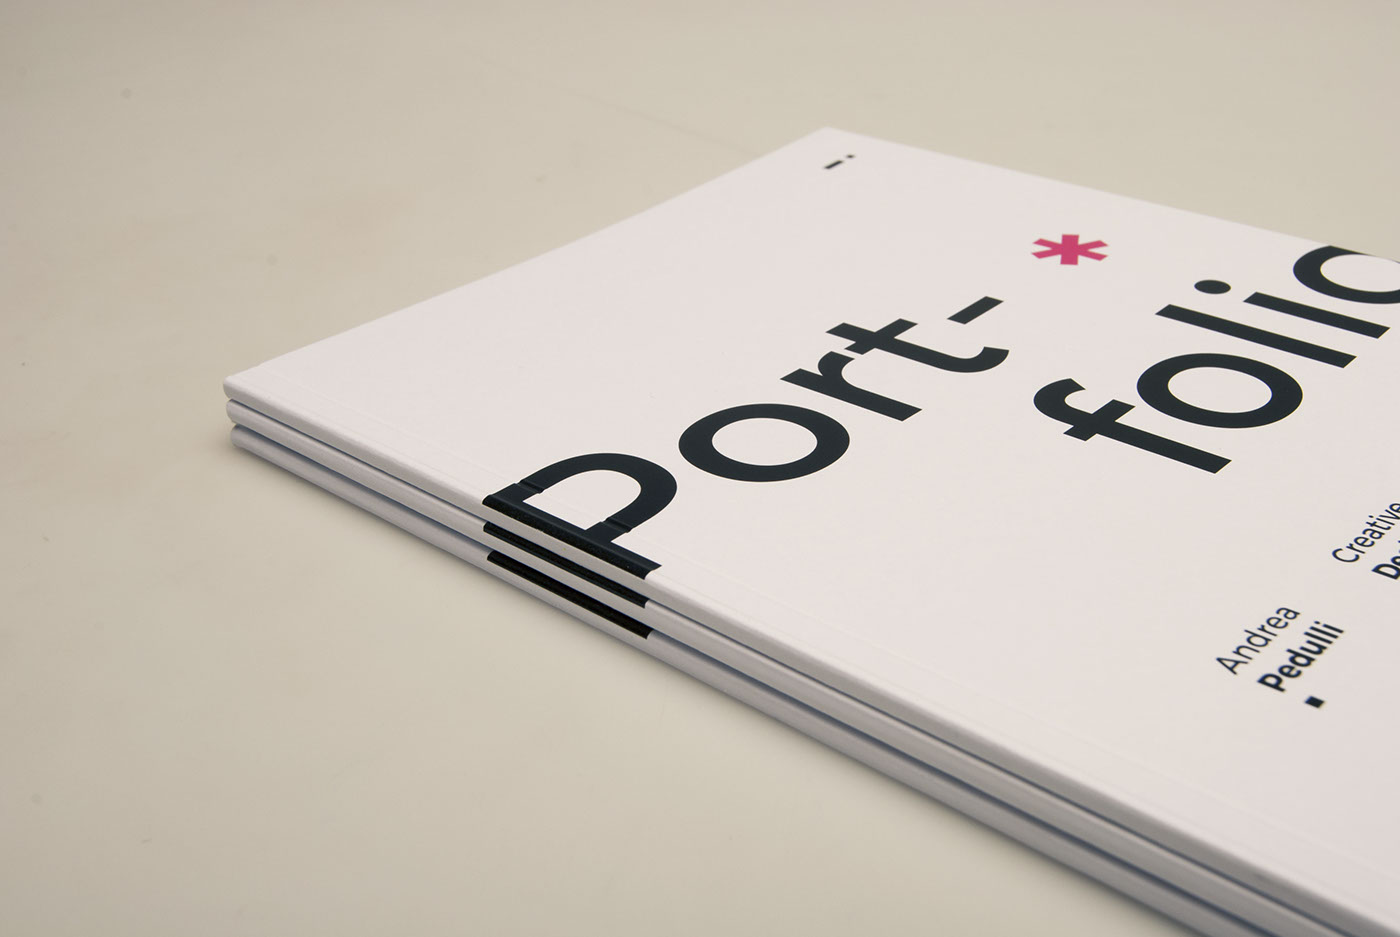 portfolio CV Layout graphic product book print design curriculum personal